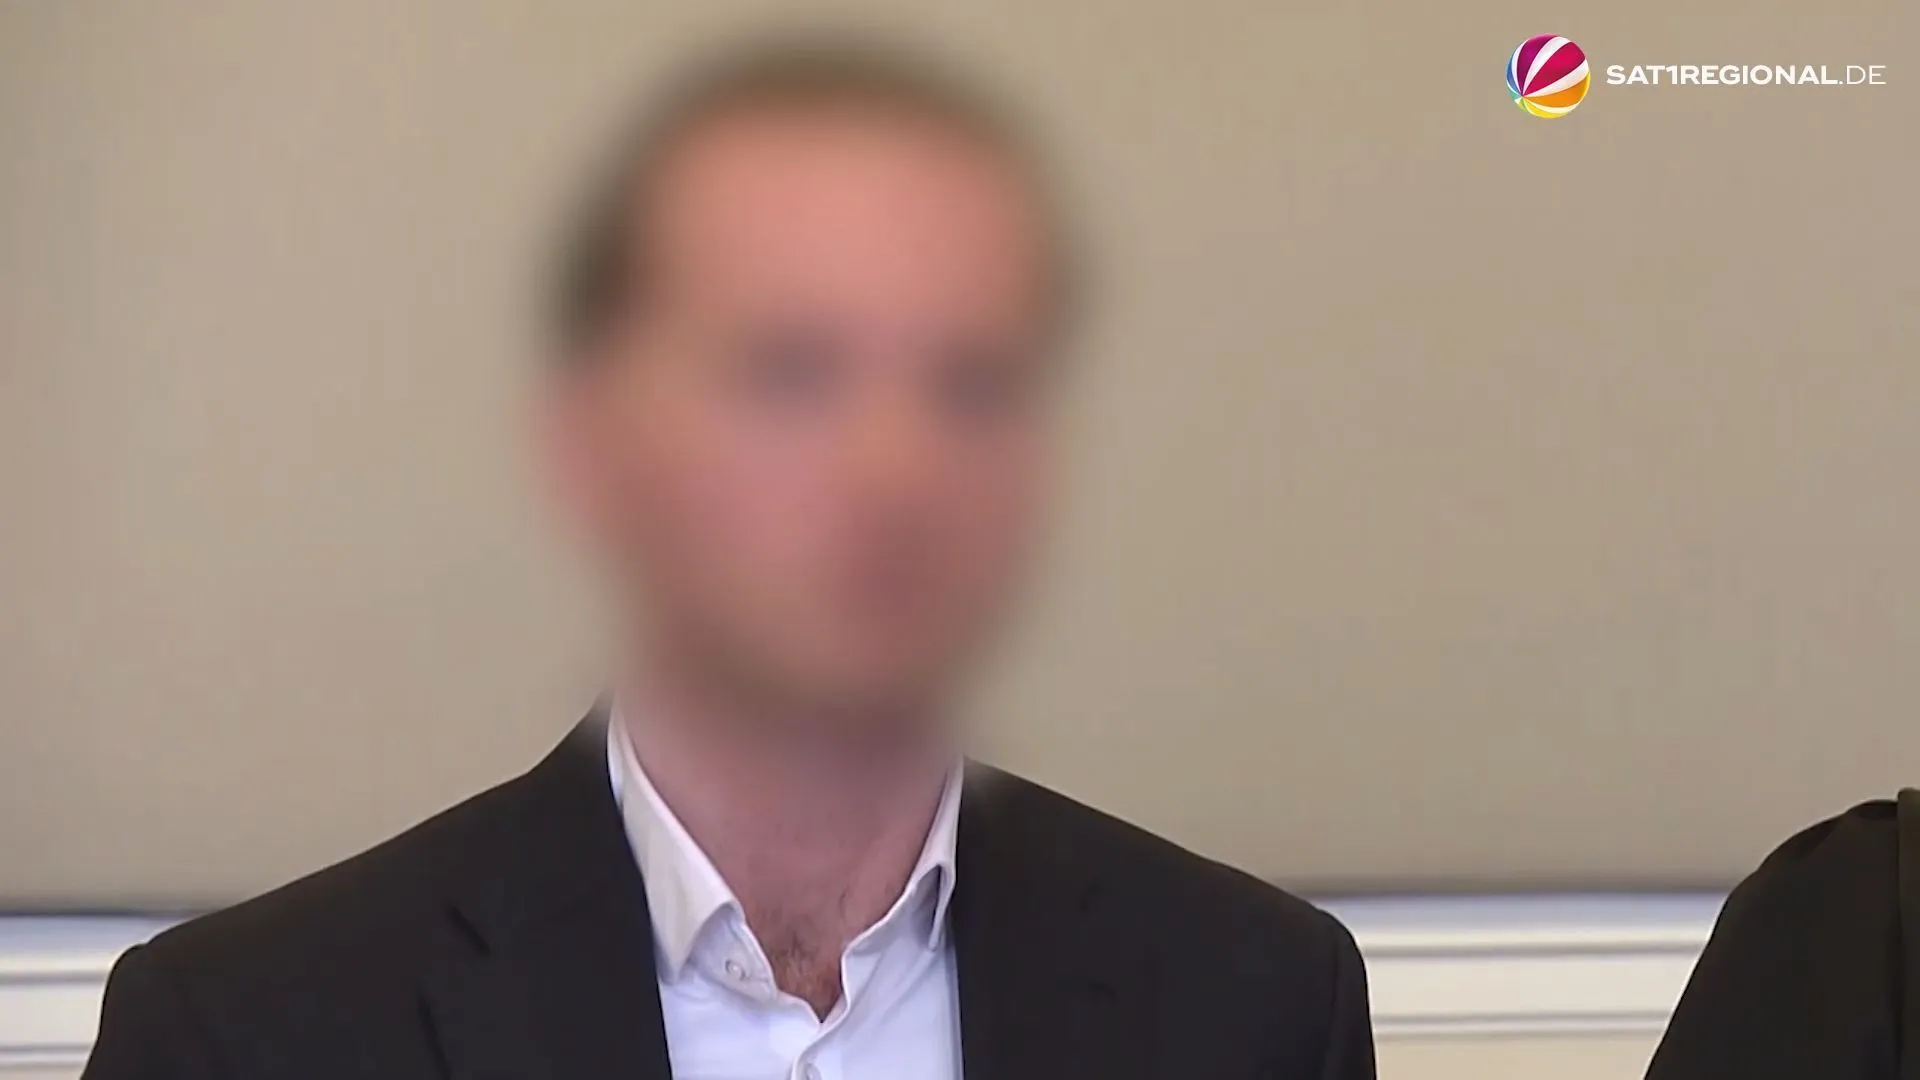 Betrug um Corona-Masken: Angeklagter wegen Verleumdung an Jens Spahn verurteilt